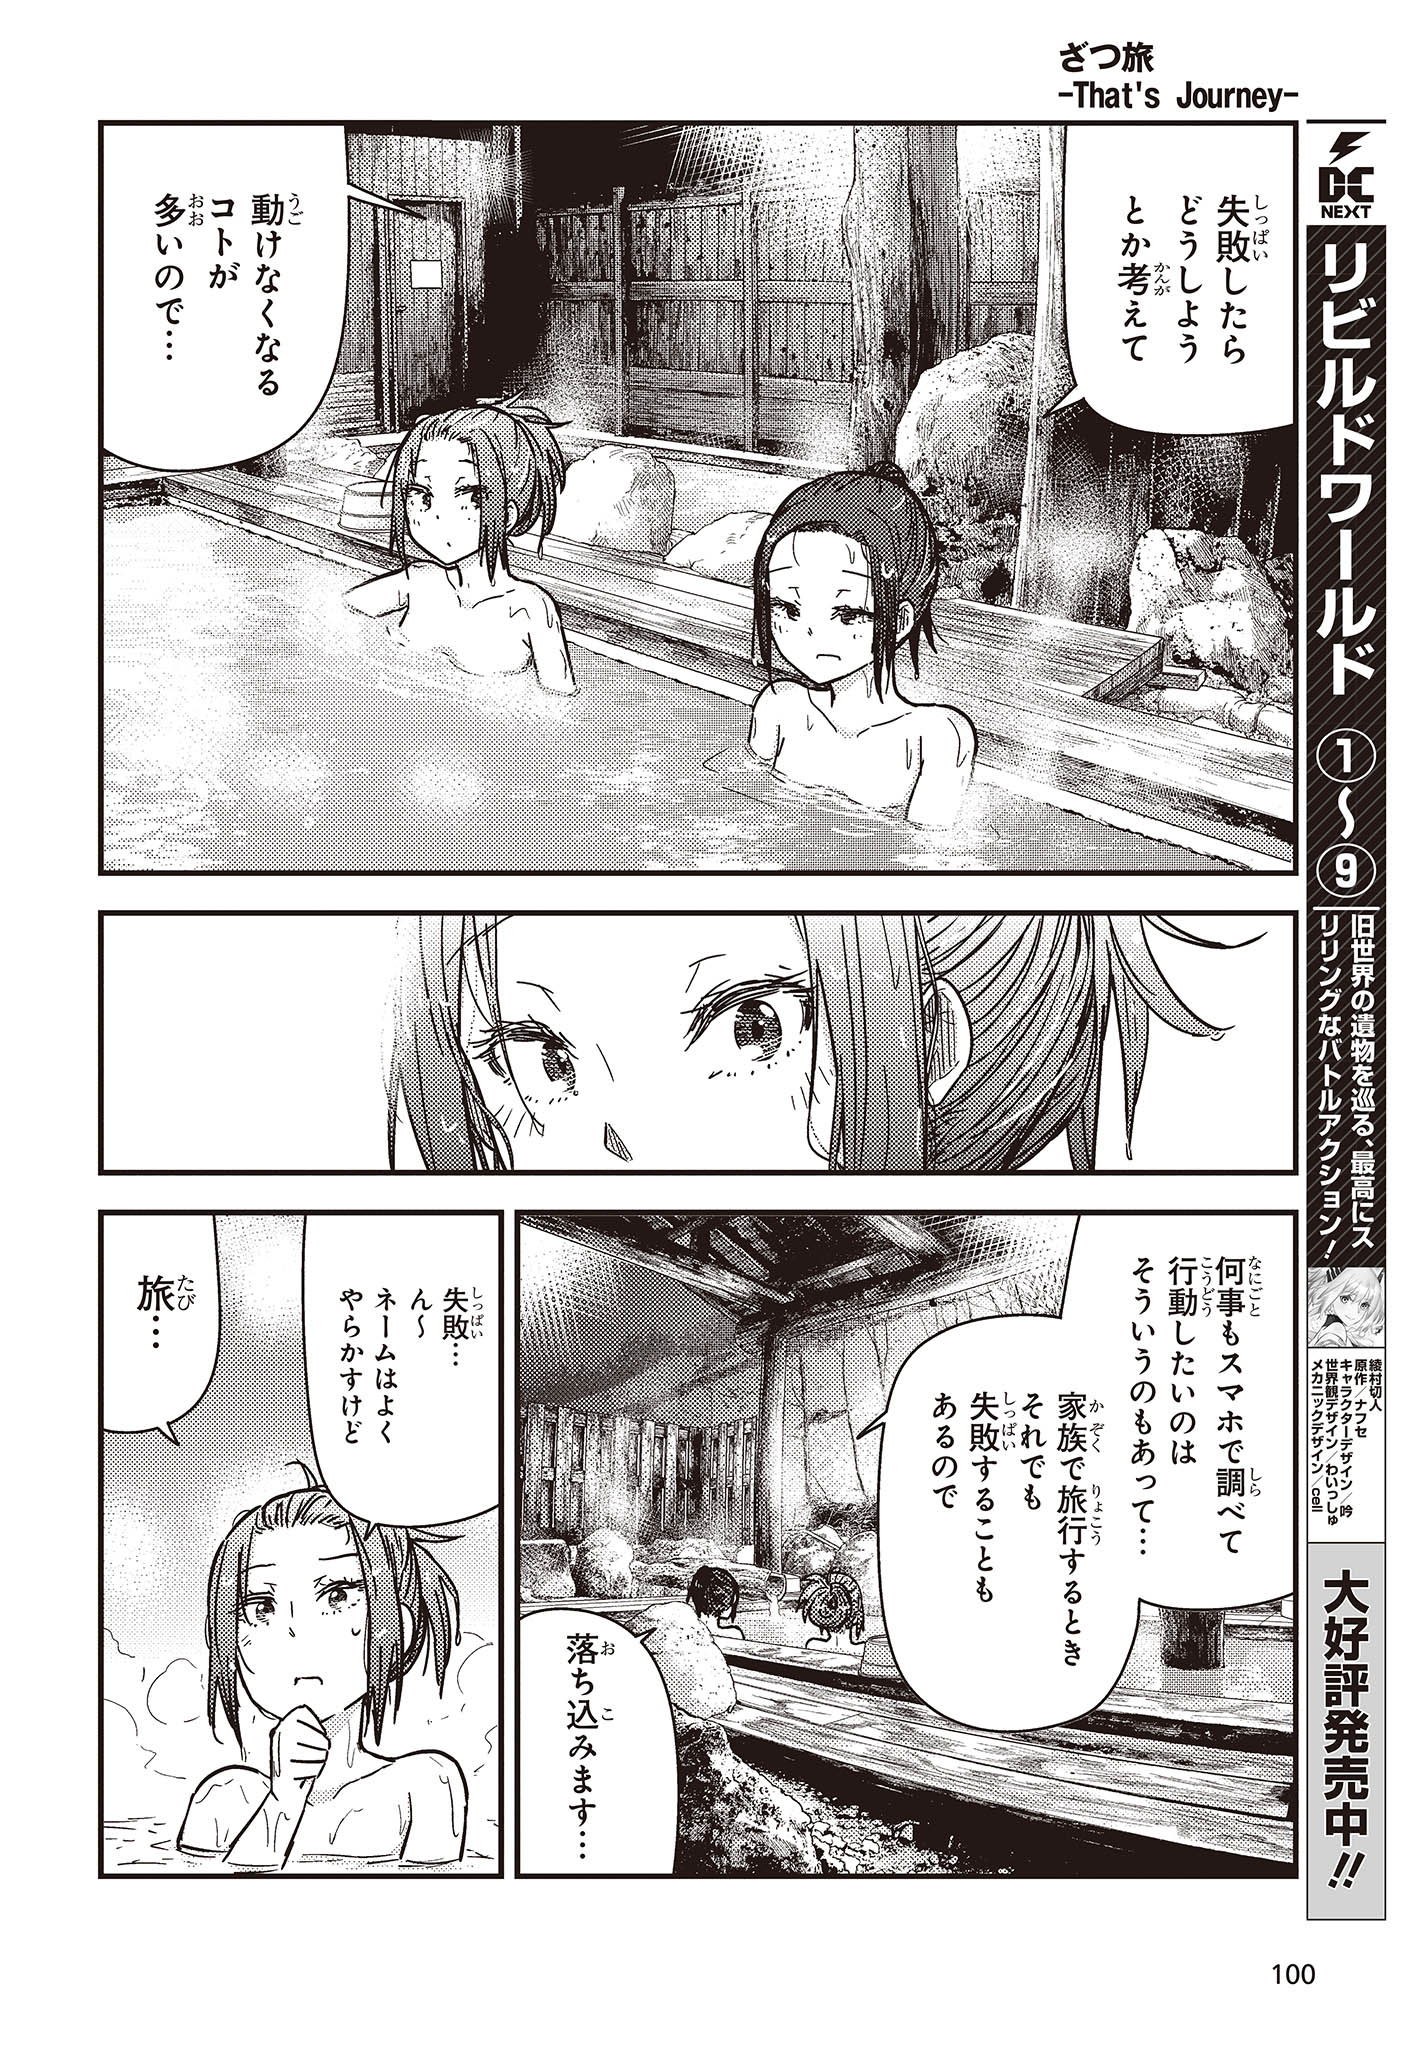 ざつ旅-That’s Journey- 第31話 - Page 14